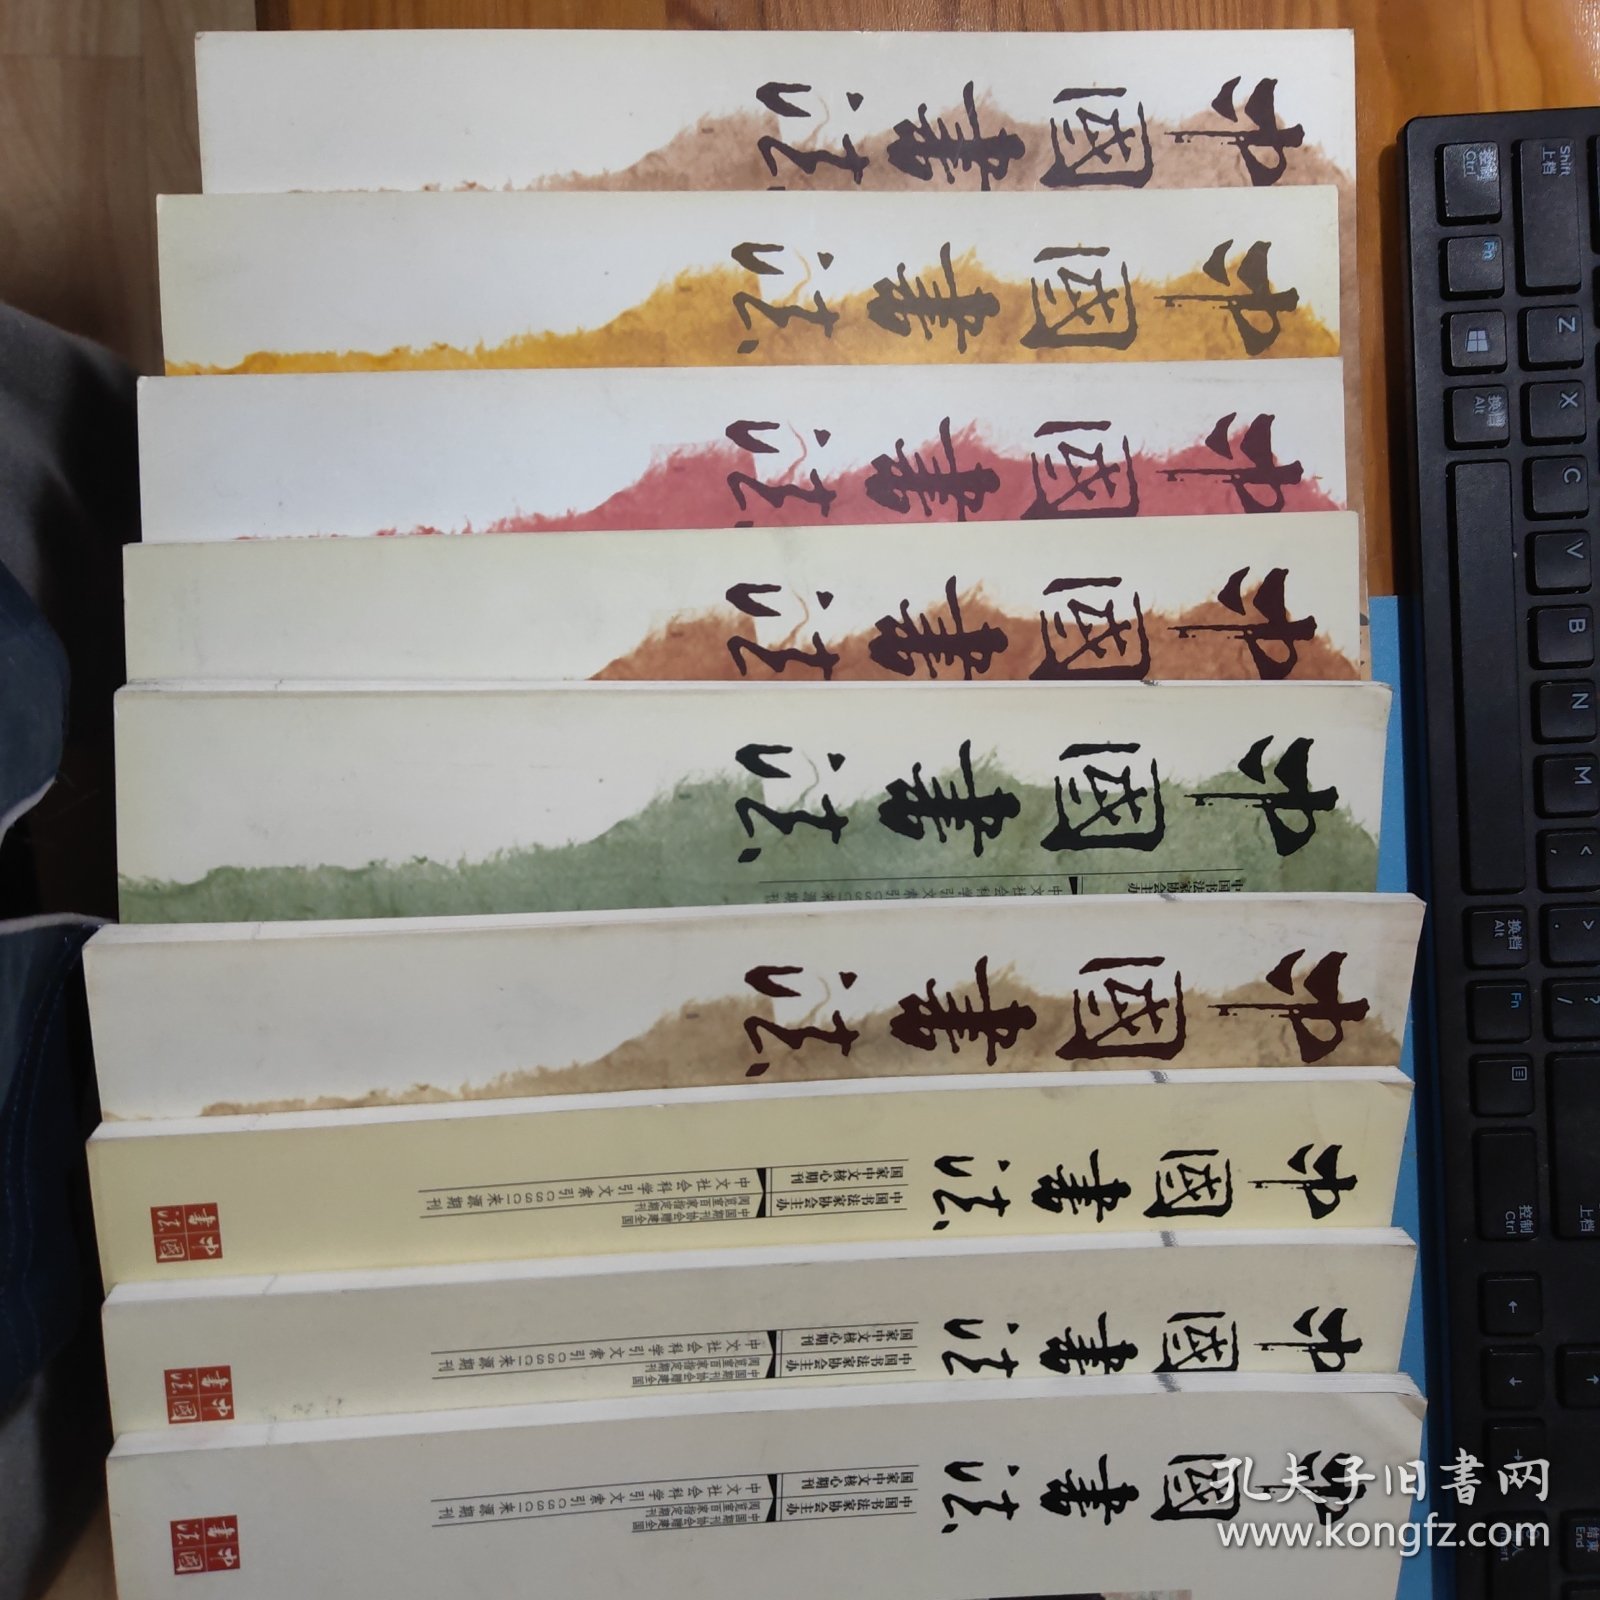 中国书法杂志 2007年第2，4，5，6，7，8，10，11，12期，运费按实际运费而定。